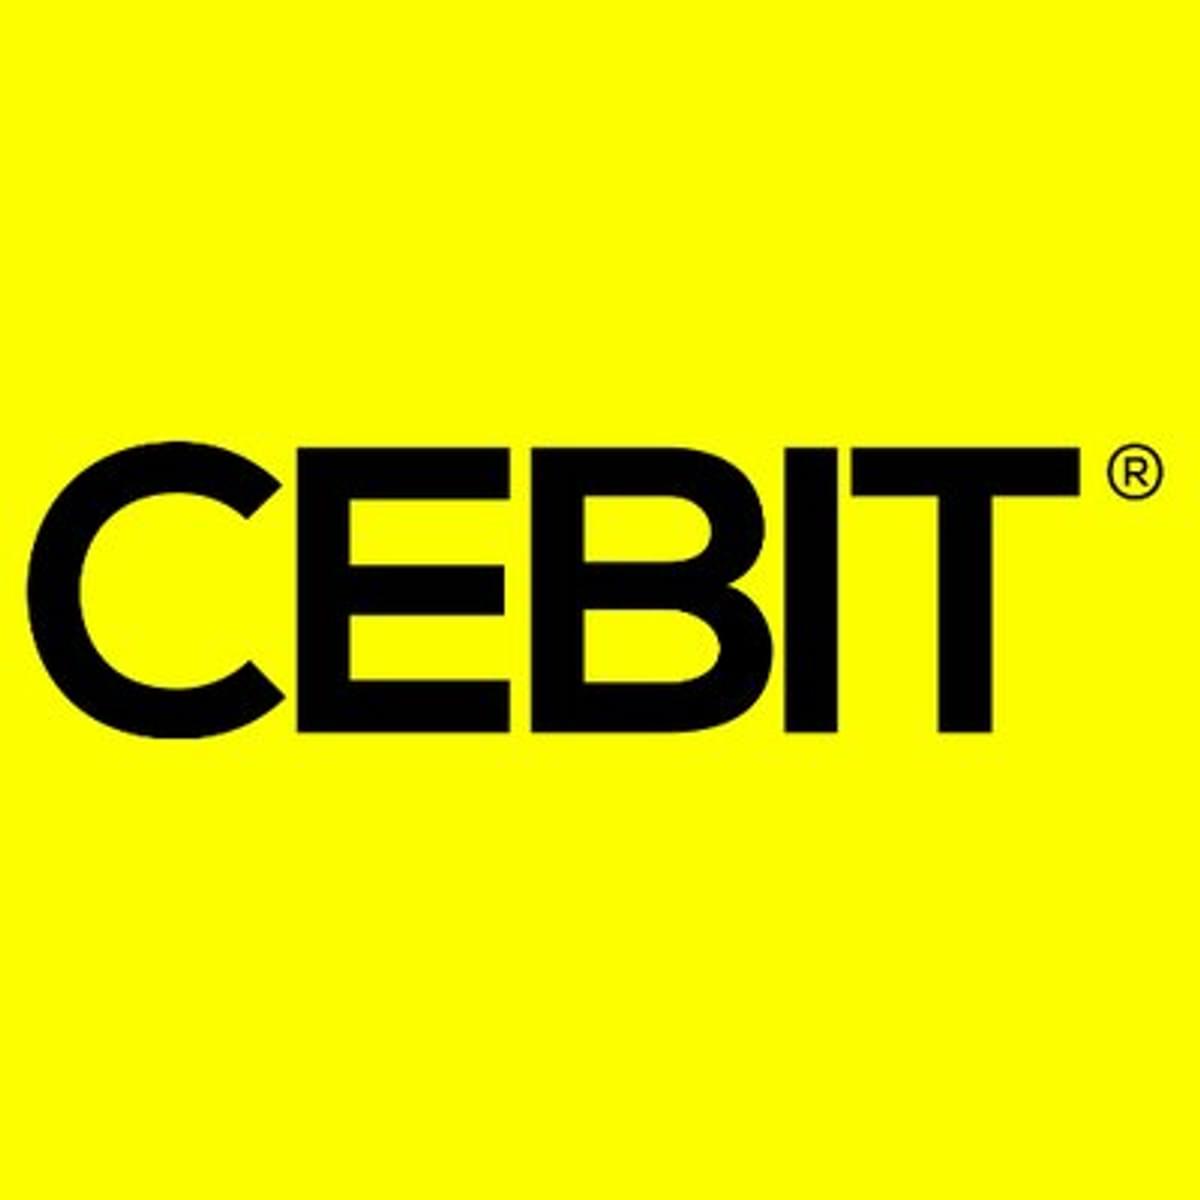 CEBIT geslaagd ondanks aanzienlijke daling aantal bezoekers image